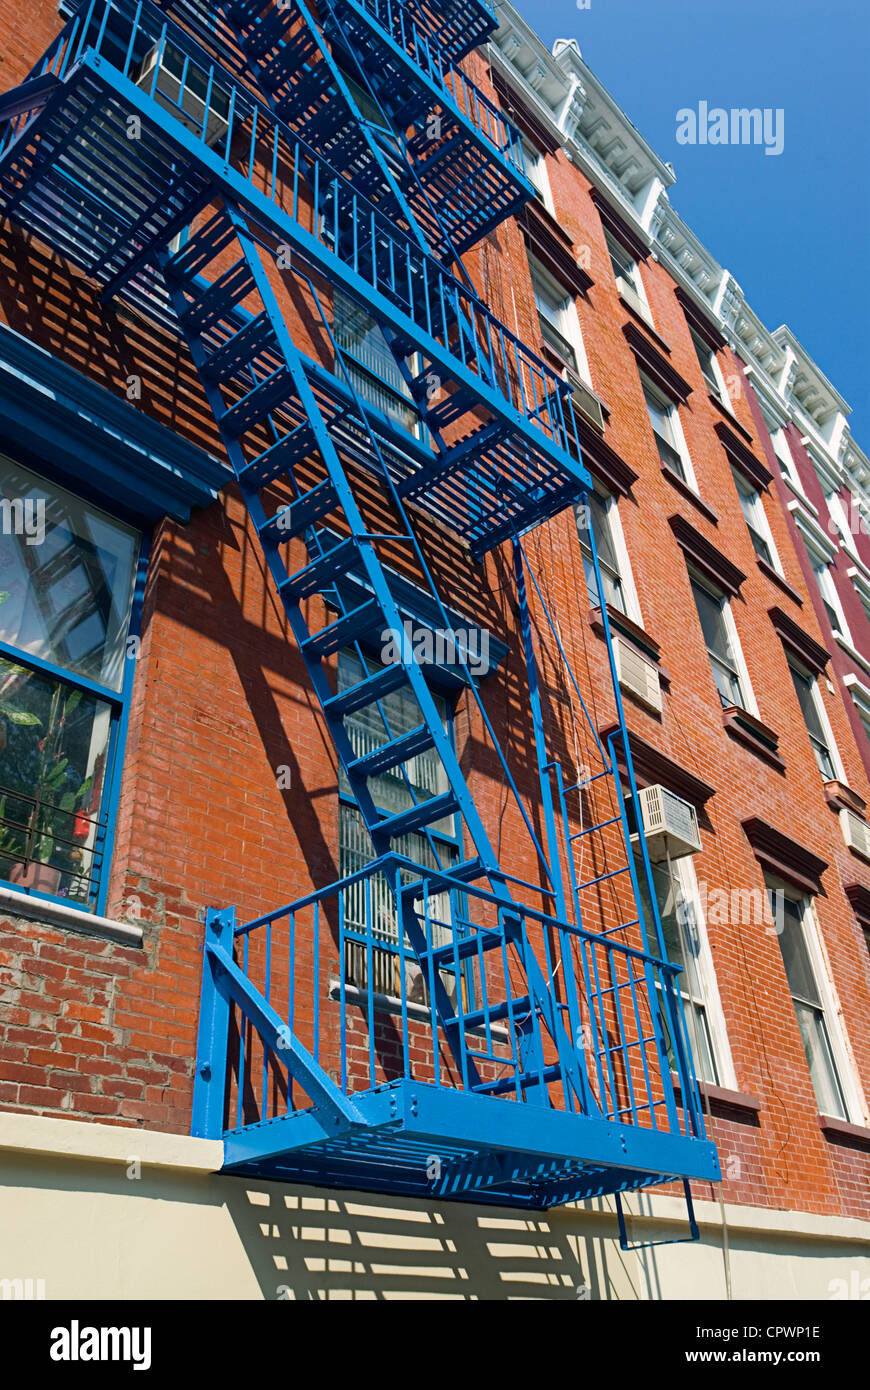 Un escalier de secours de la ville de New York East Village du quartier. Banque D'Images